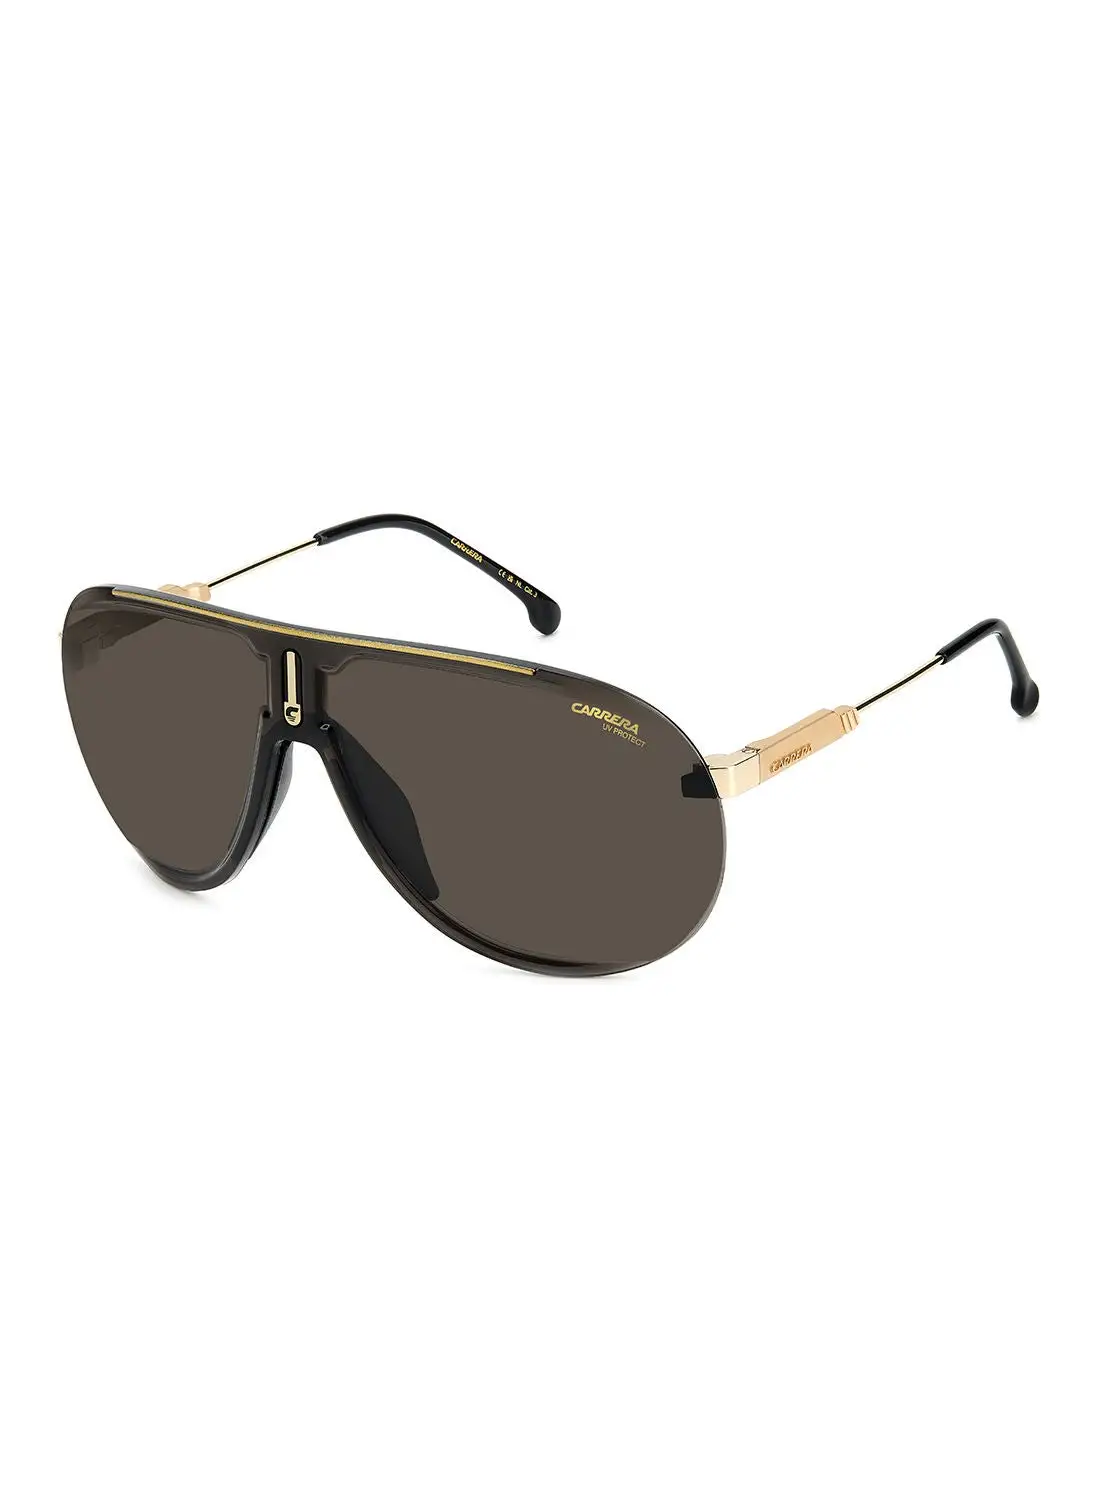 نظارة شمسية بايلوت للحماية من الأشعة فوق البنفسجية للجنسين من كاريرا - سوبر شامبيون أسود/ذهبي 99 - مقاس العدسة: 99 ملم